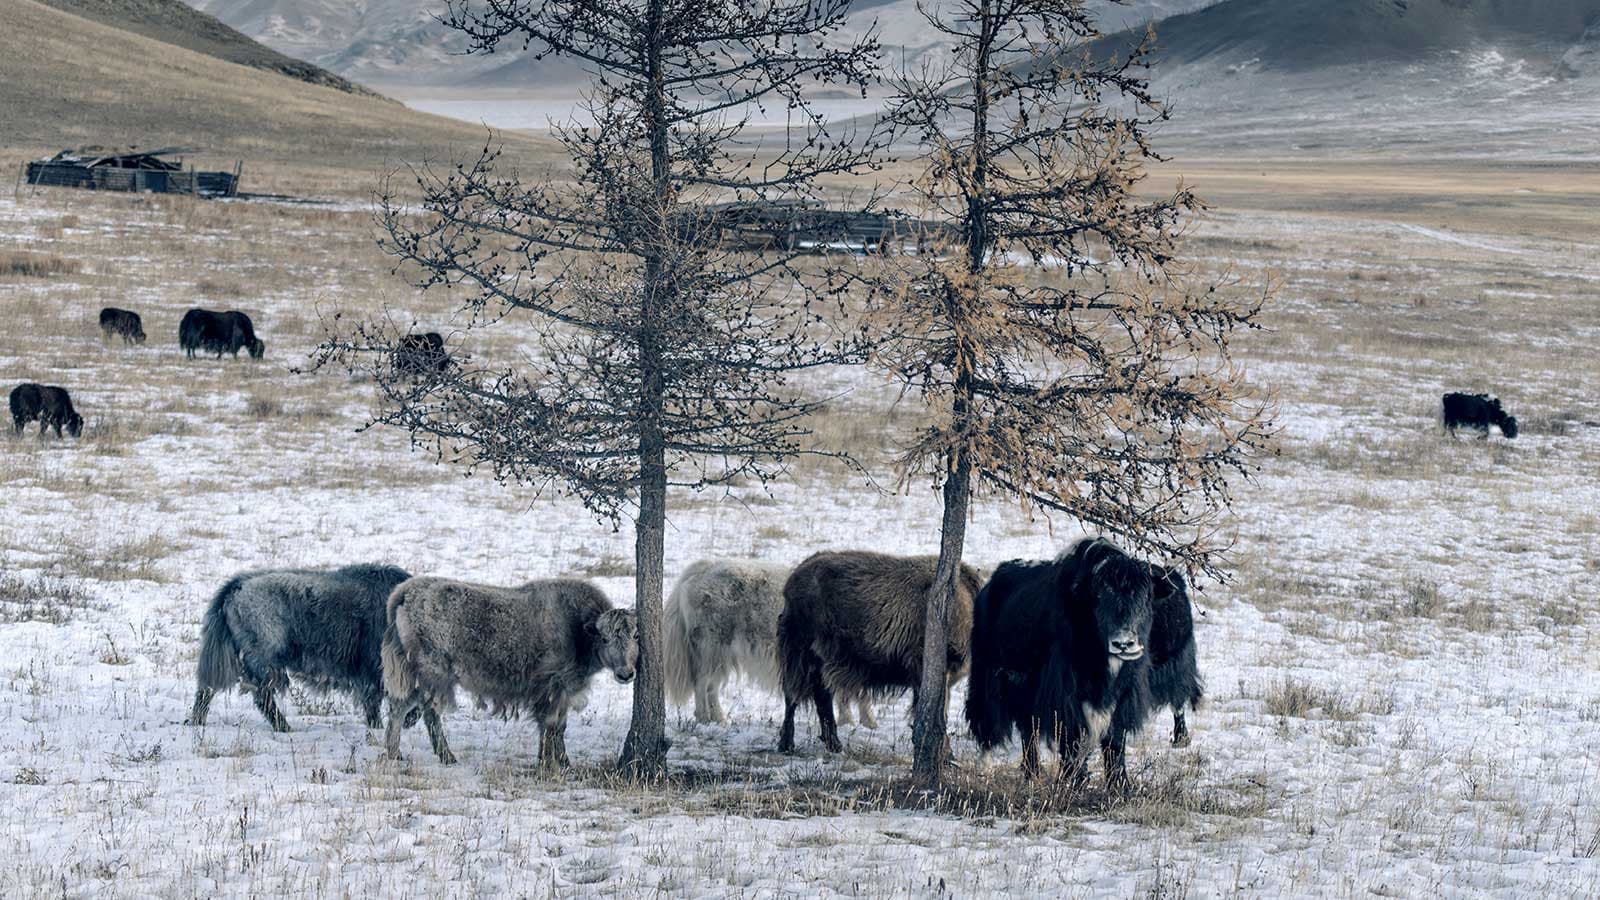 Tengri – thương hiệu tiên phong trong lĩnh vực sản xuất vải từ lông bò yak Khangai bền vững